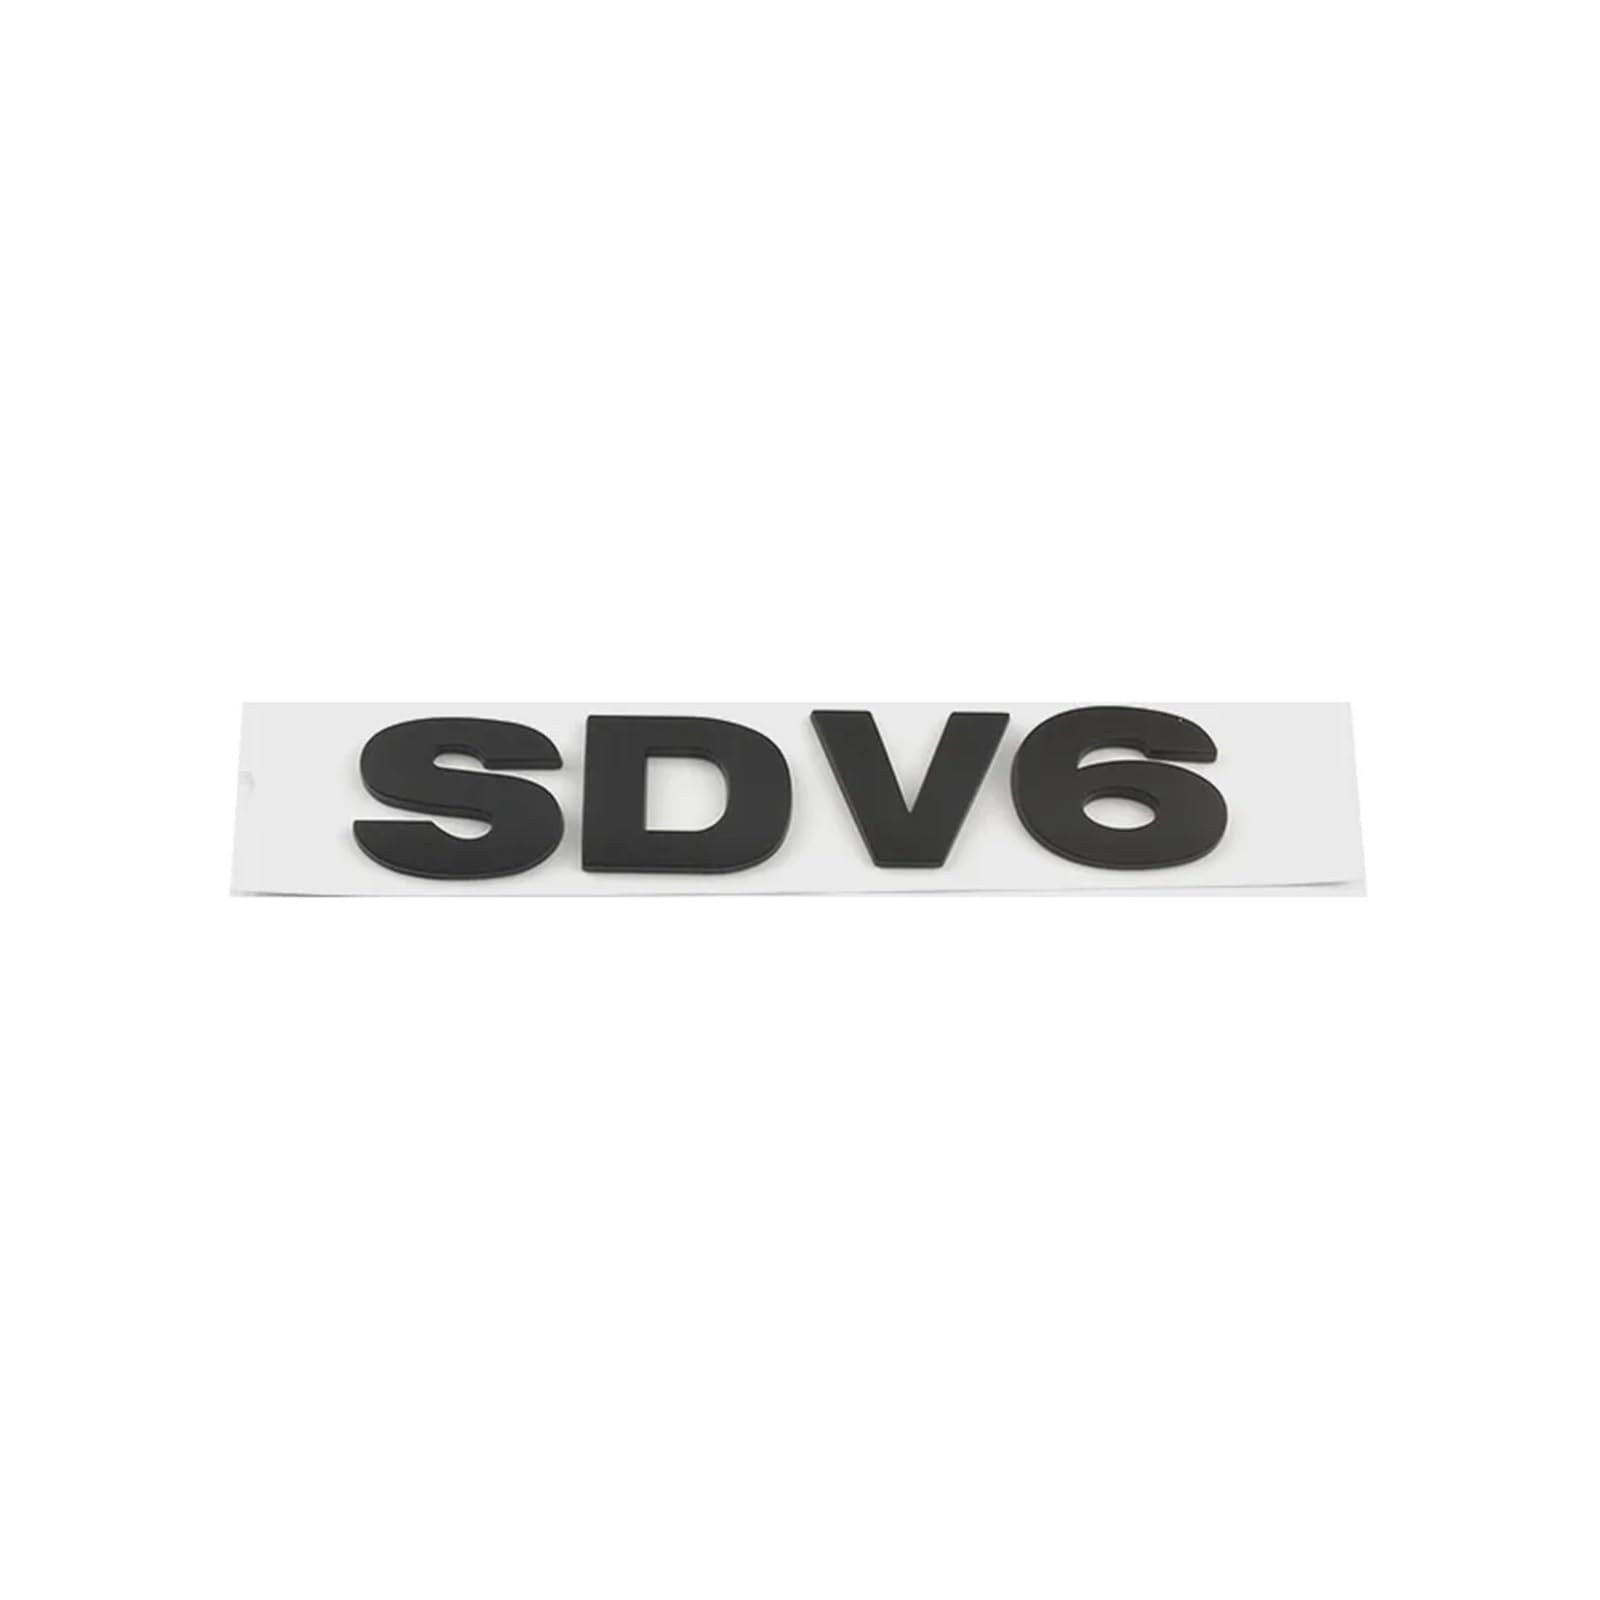 AQXYWQOL Auto SDV6 SDV8 Kofferraum-Kotflügel-Logo-Abzeichen-Emblem-Aufkleber, kompatibel mit Sport 4-Zubehör Farbe ist konstant, verblasst nicht und beschädigt(SDV6 Matte black) von AQXYWQOL